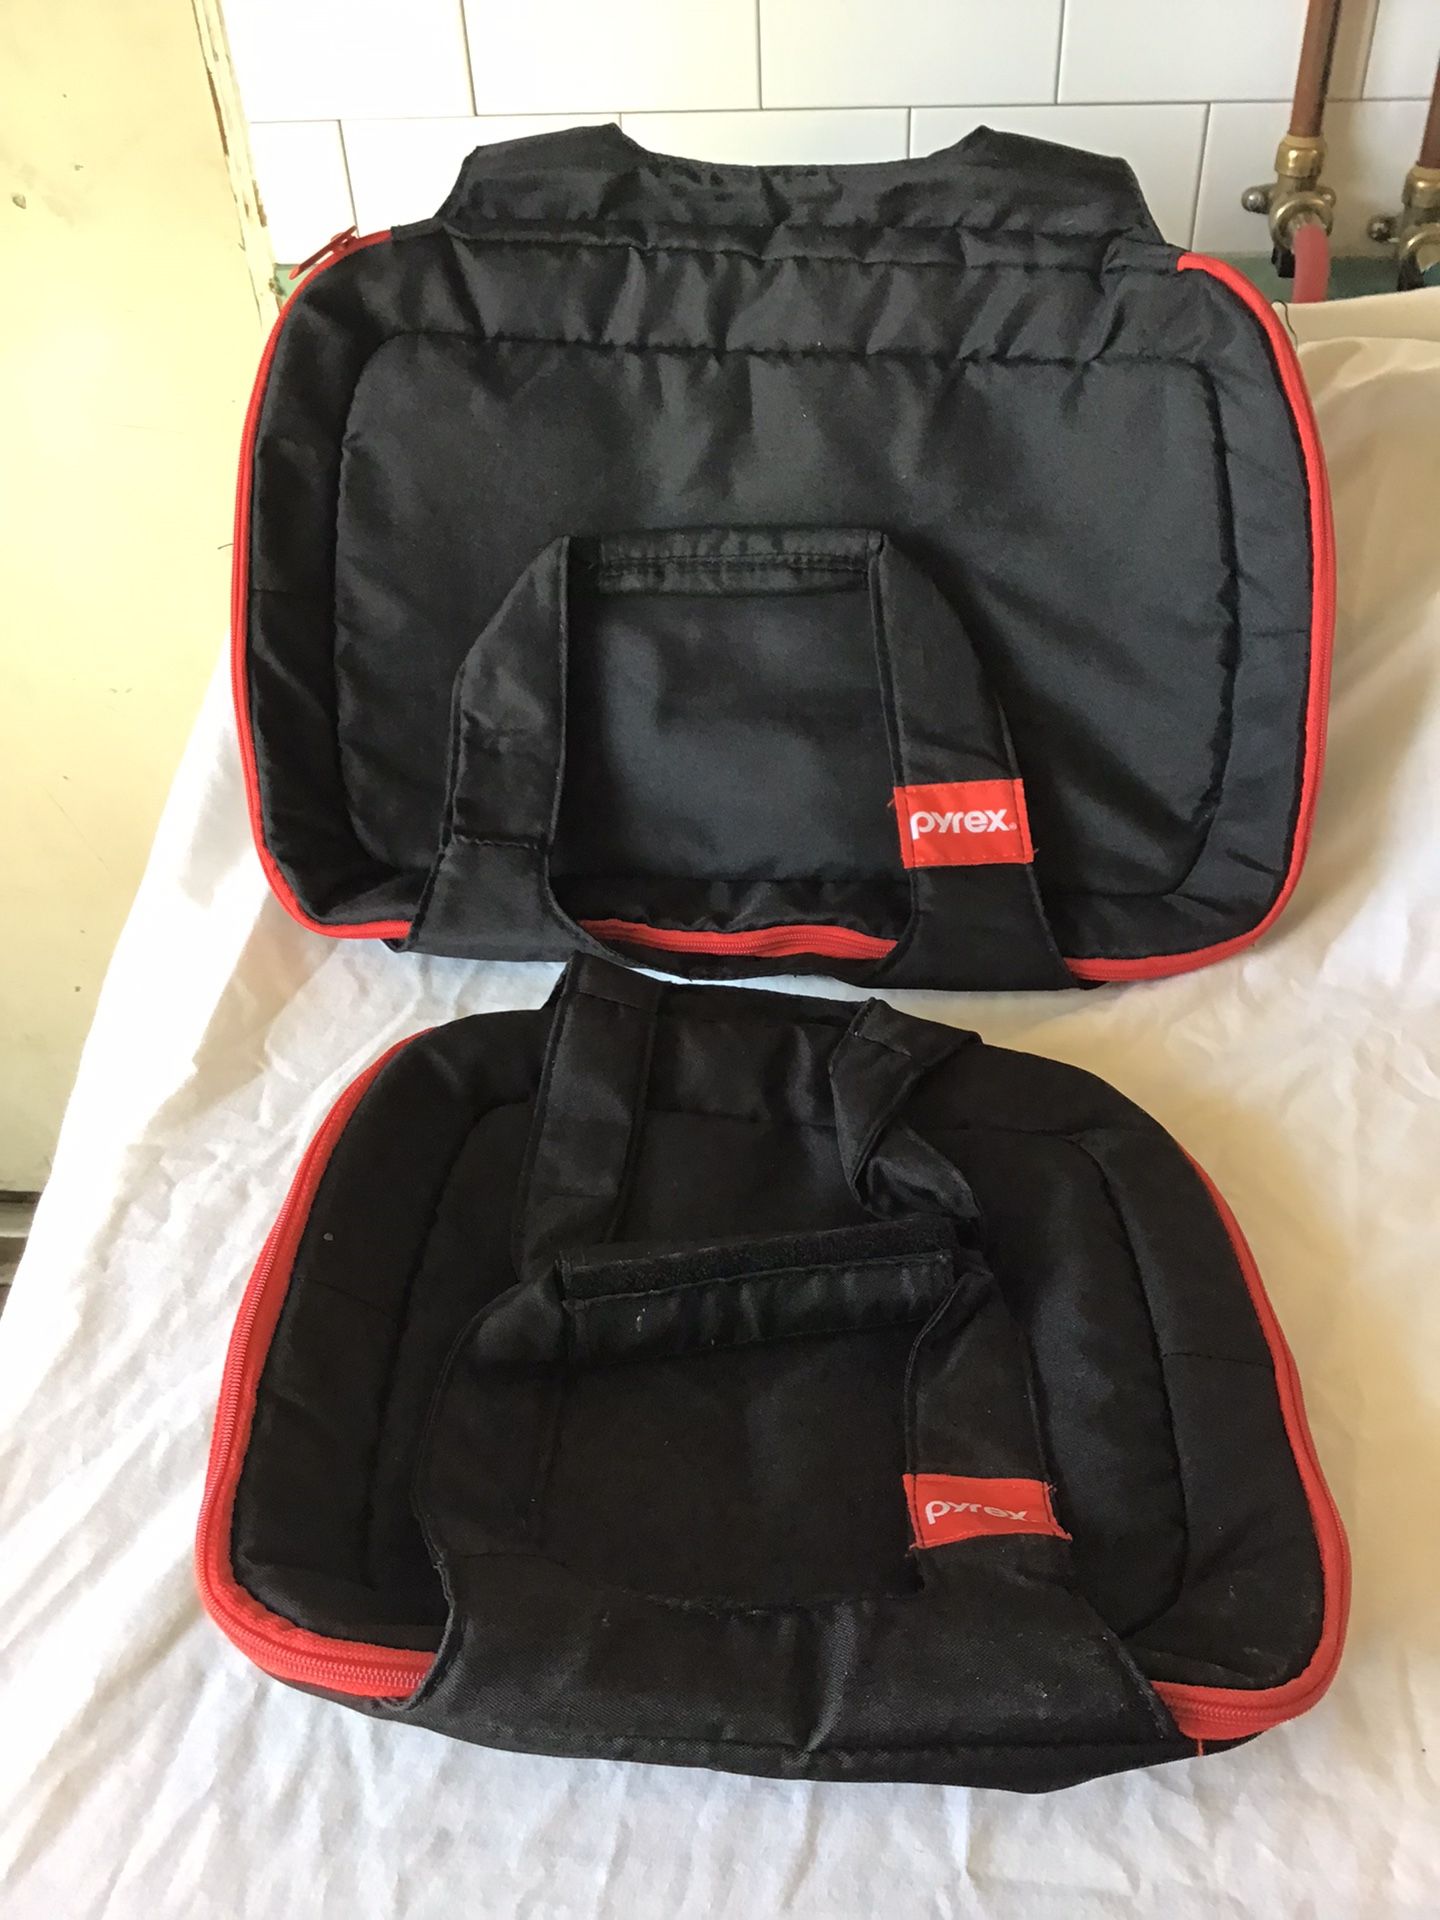 2 Pyrex Bags